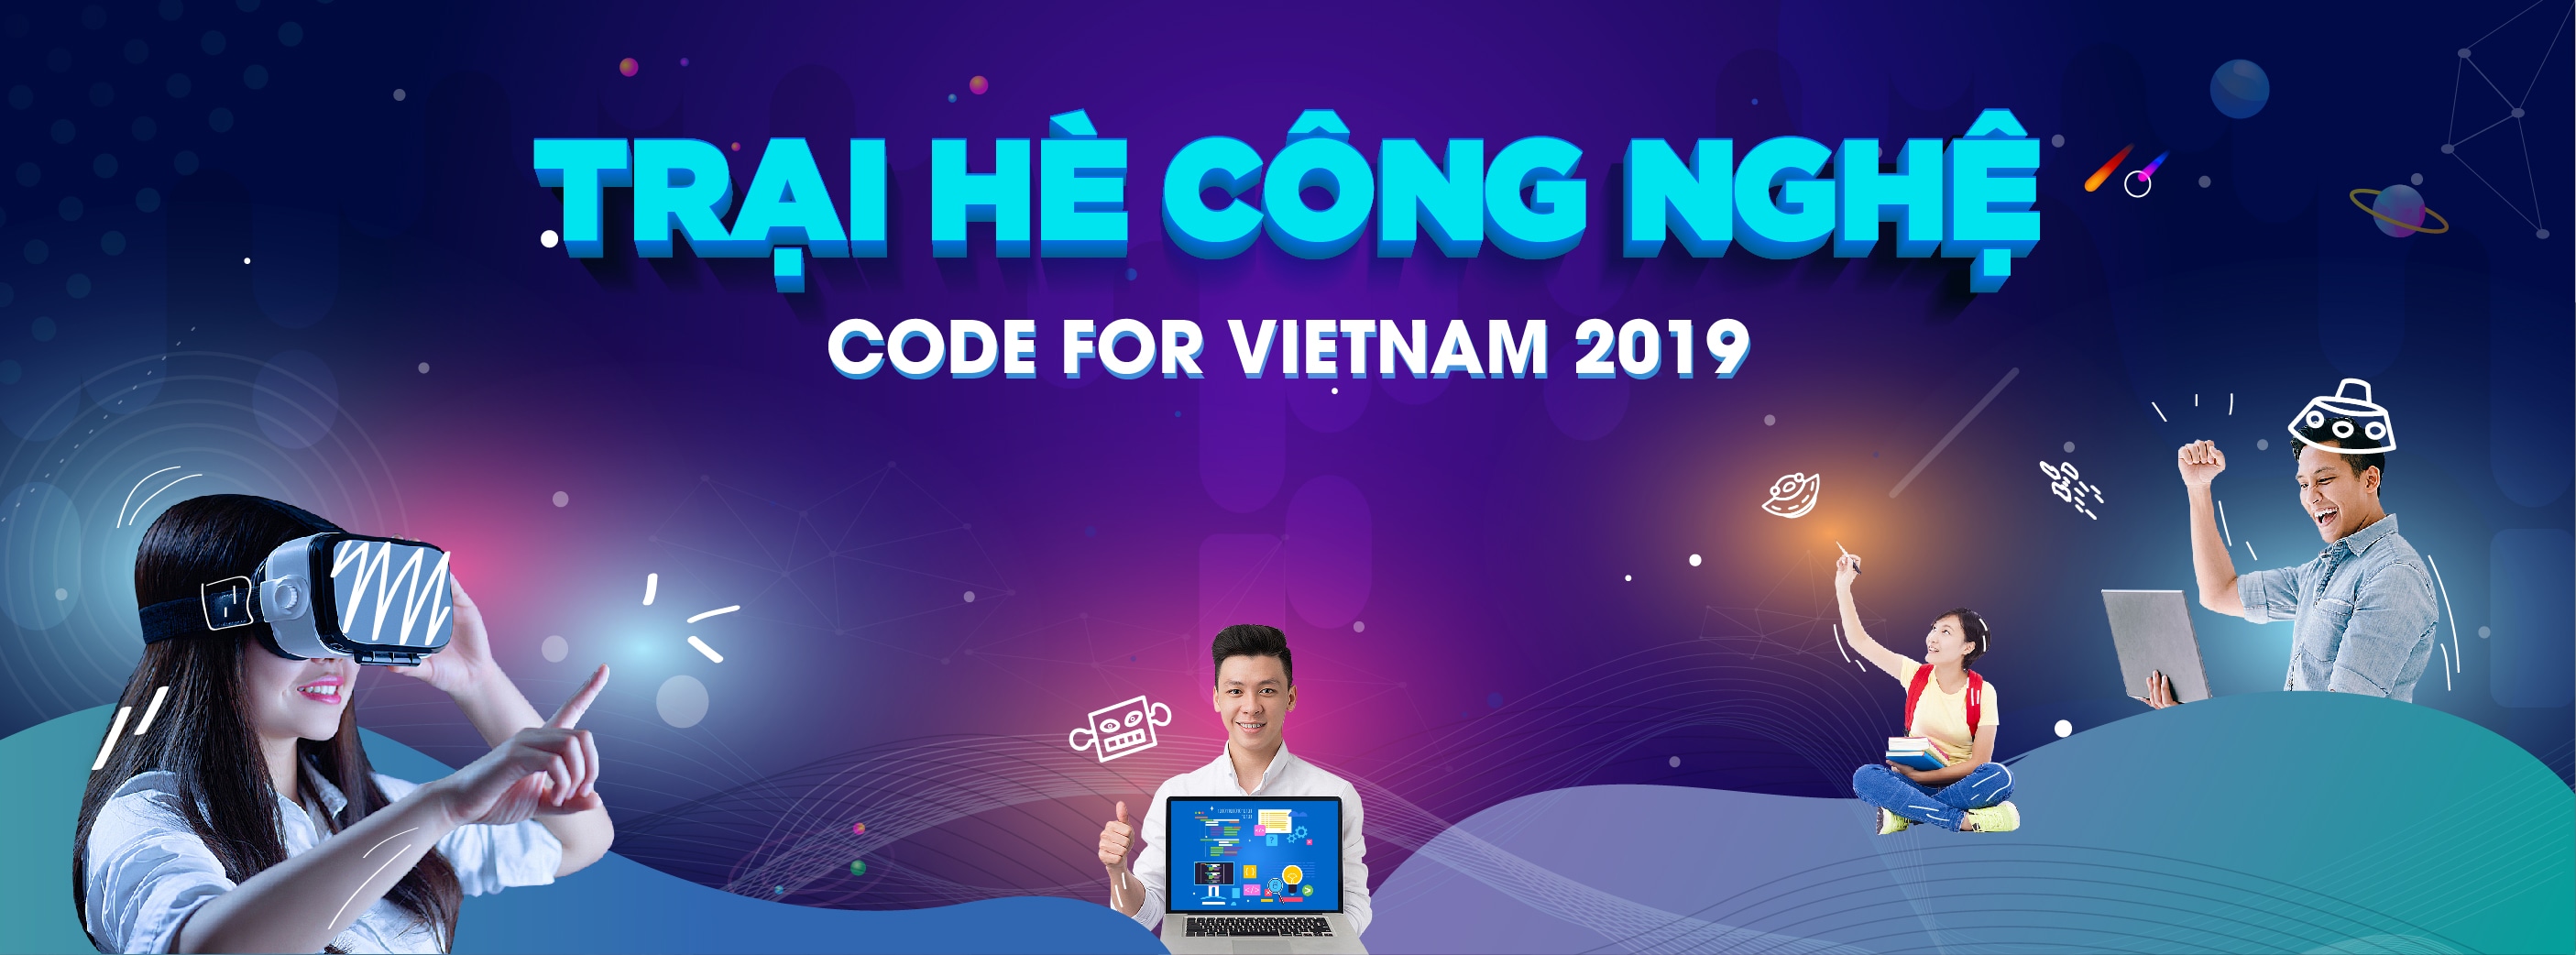 Trại hè công nghệ Code for Vietnam - đợt 2 